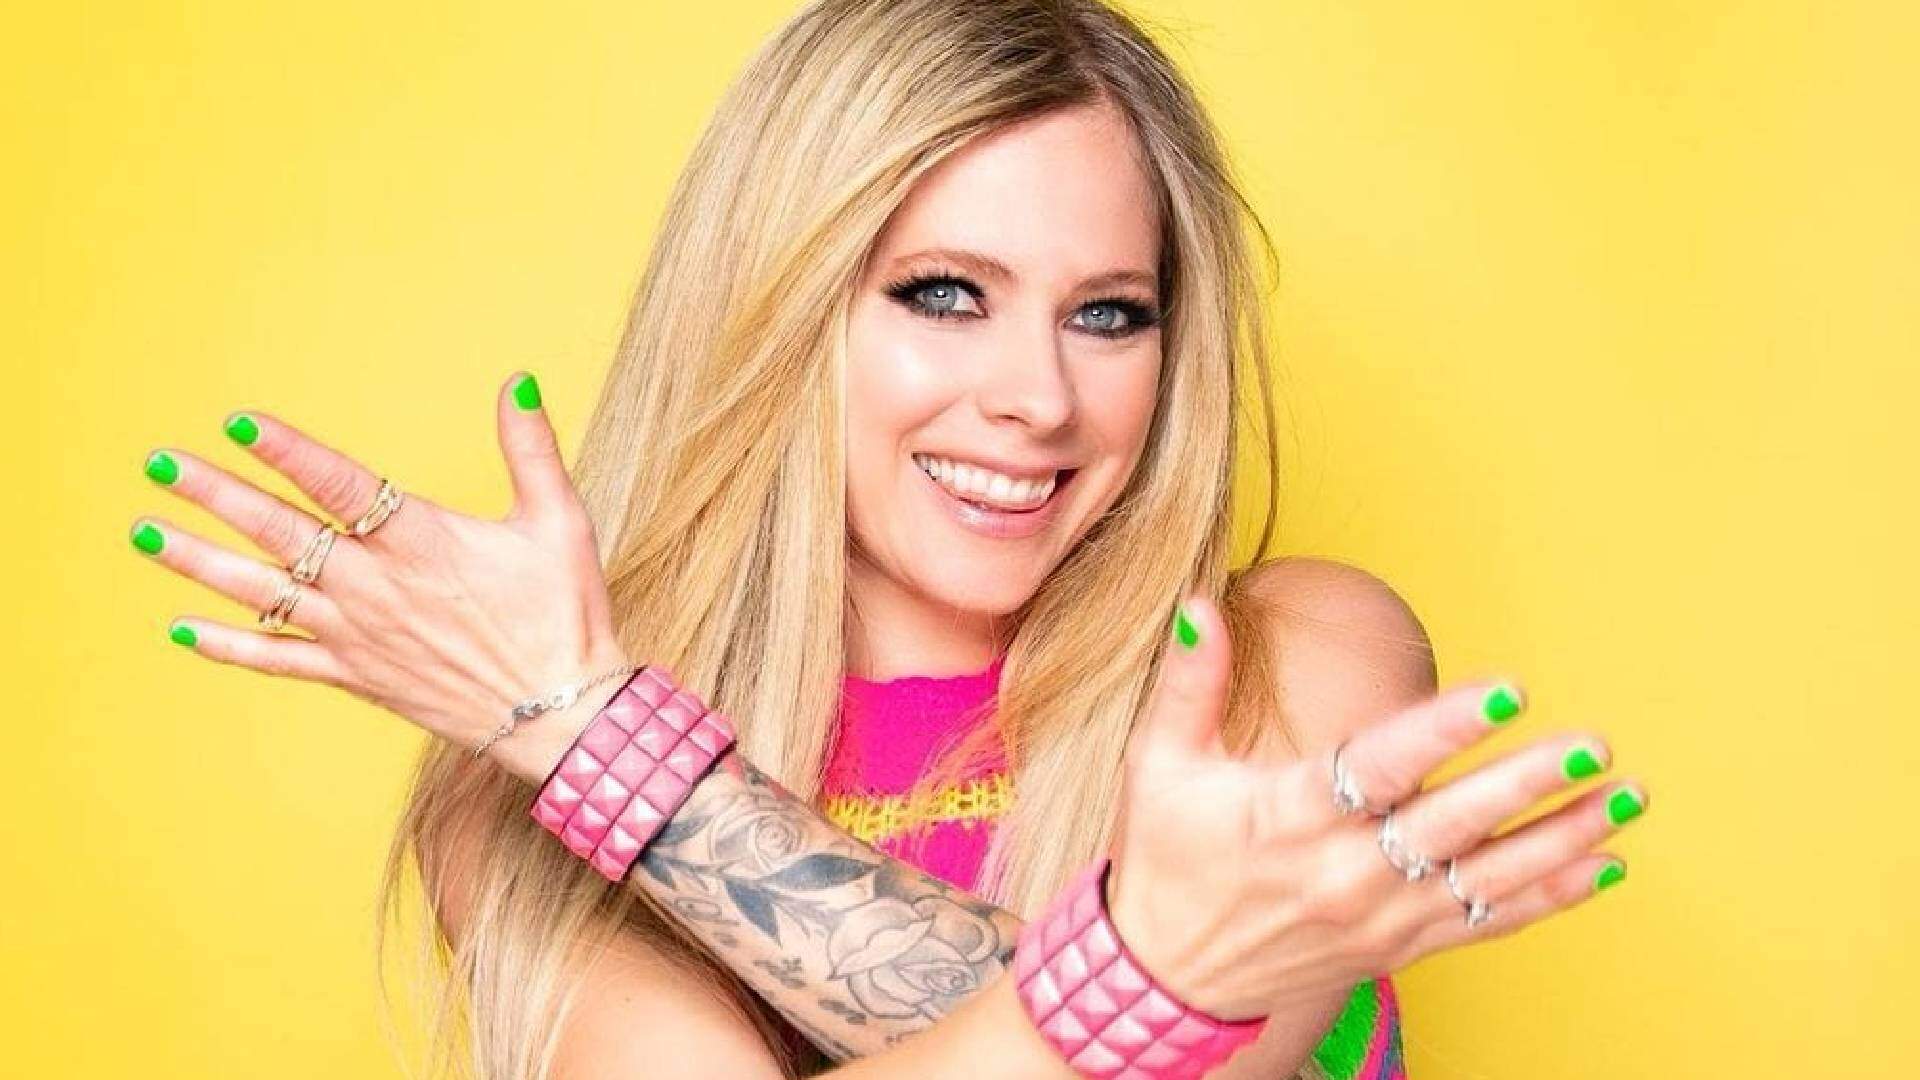 Avril Lavigne fará show em São Paulo em 2022, revela jornalista